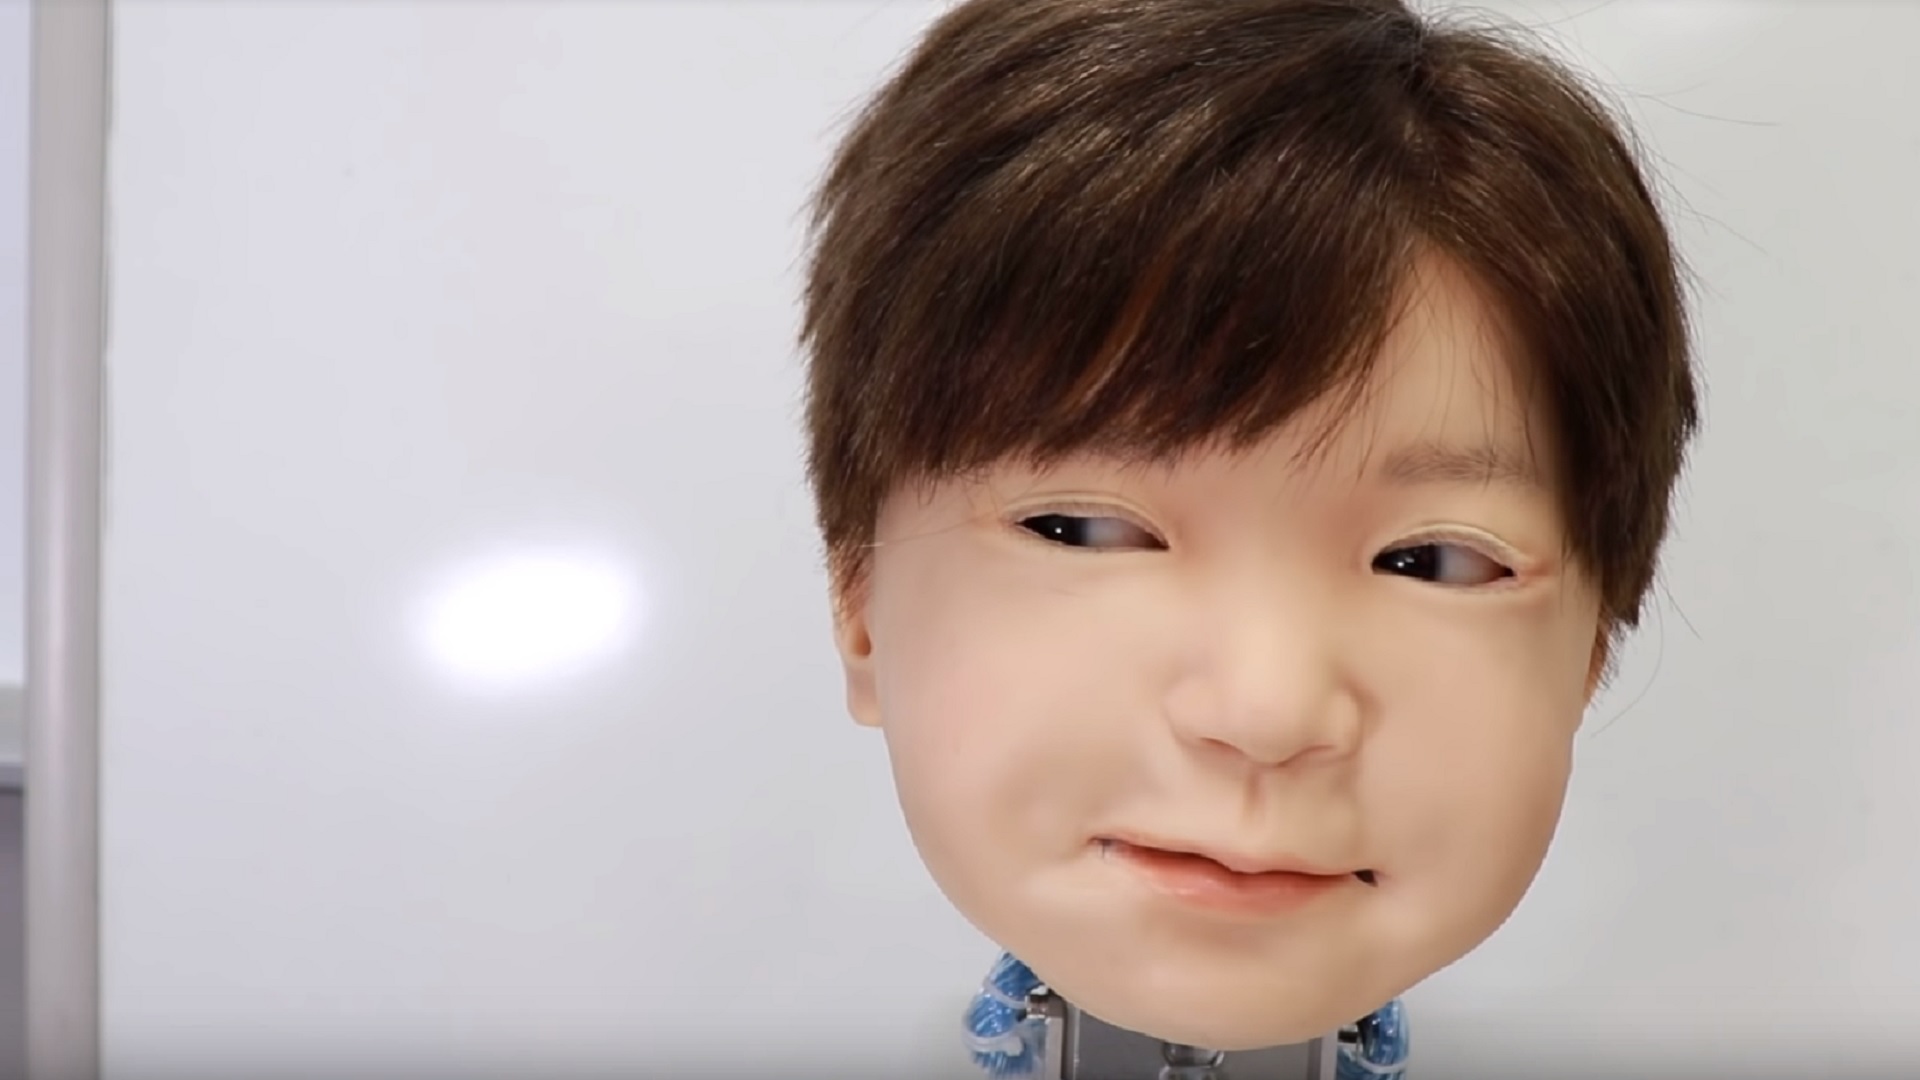 Cet enfant-robot a le potentiel pour devenir votre pire cauchemar